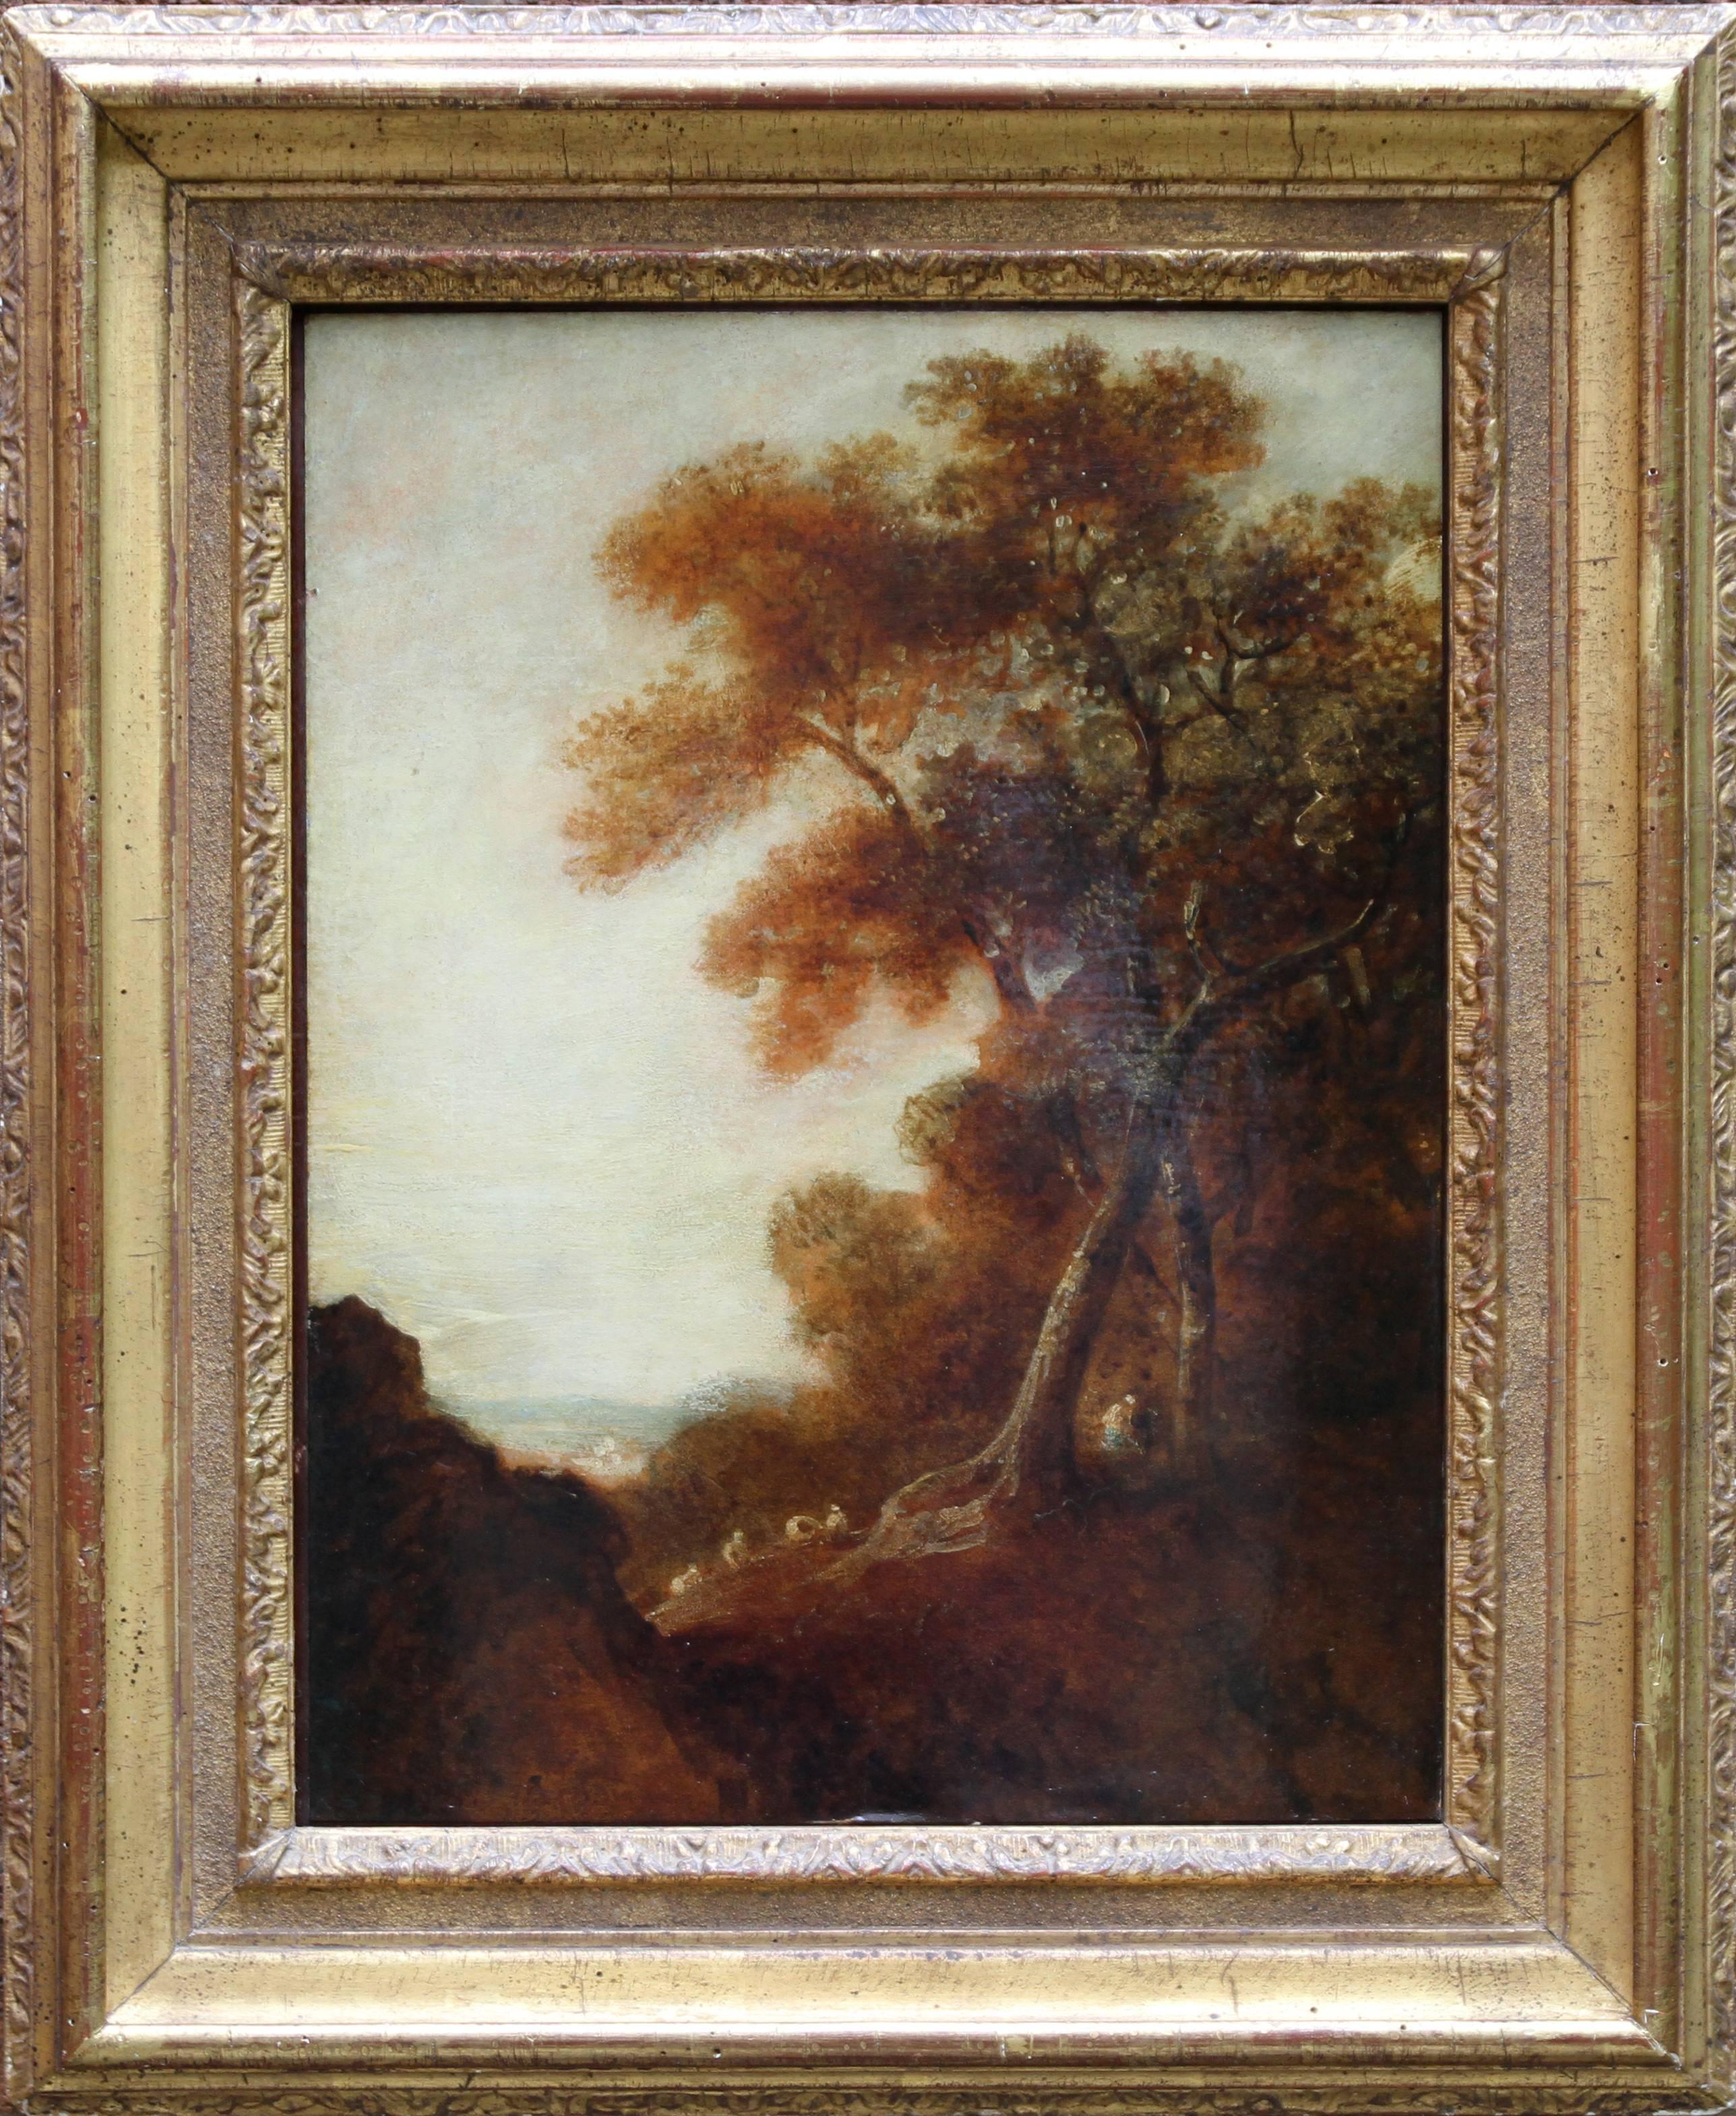 Thomas Gainsborough (circle) Landscape Painting – Holz-Landschaft – britische Kunst des 18. Jahrhunderts, Ölgemälde mit Bäumen und Figuren